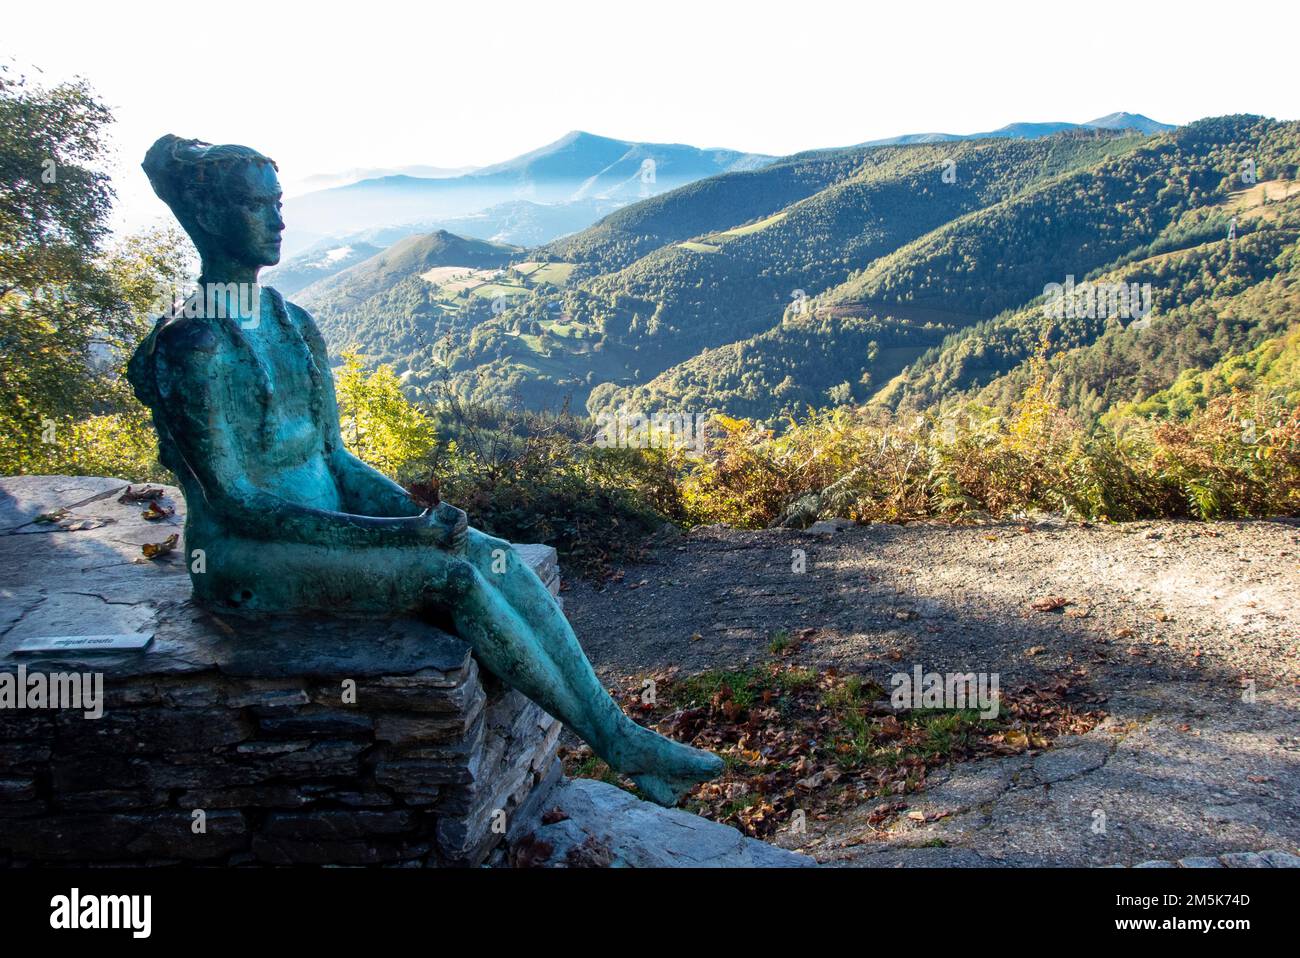 Der kleine Pilger. Statue einer jungen Frau, die mit einem Rucksack am Bergpass von O Cebreiro in Galicien, Nordspanien, entlang der historischen Pilgerroute des Camino de Santiago sitzt Stockfoto